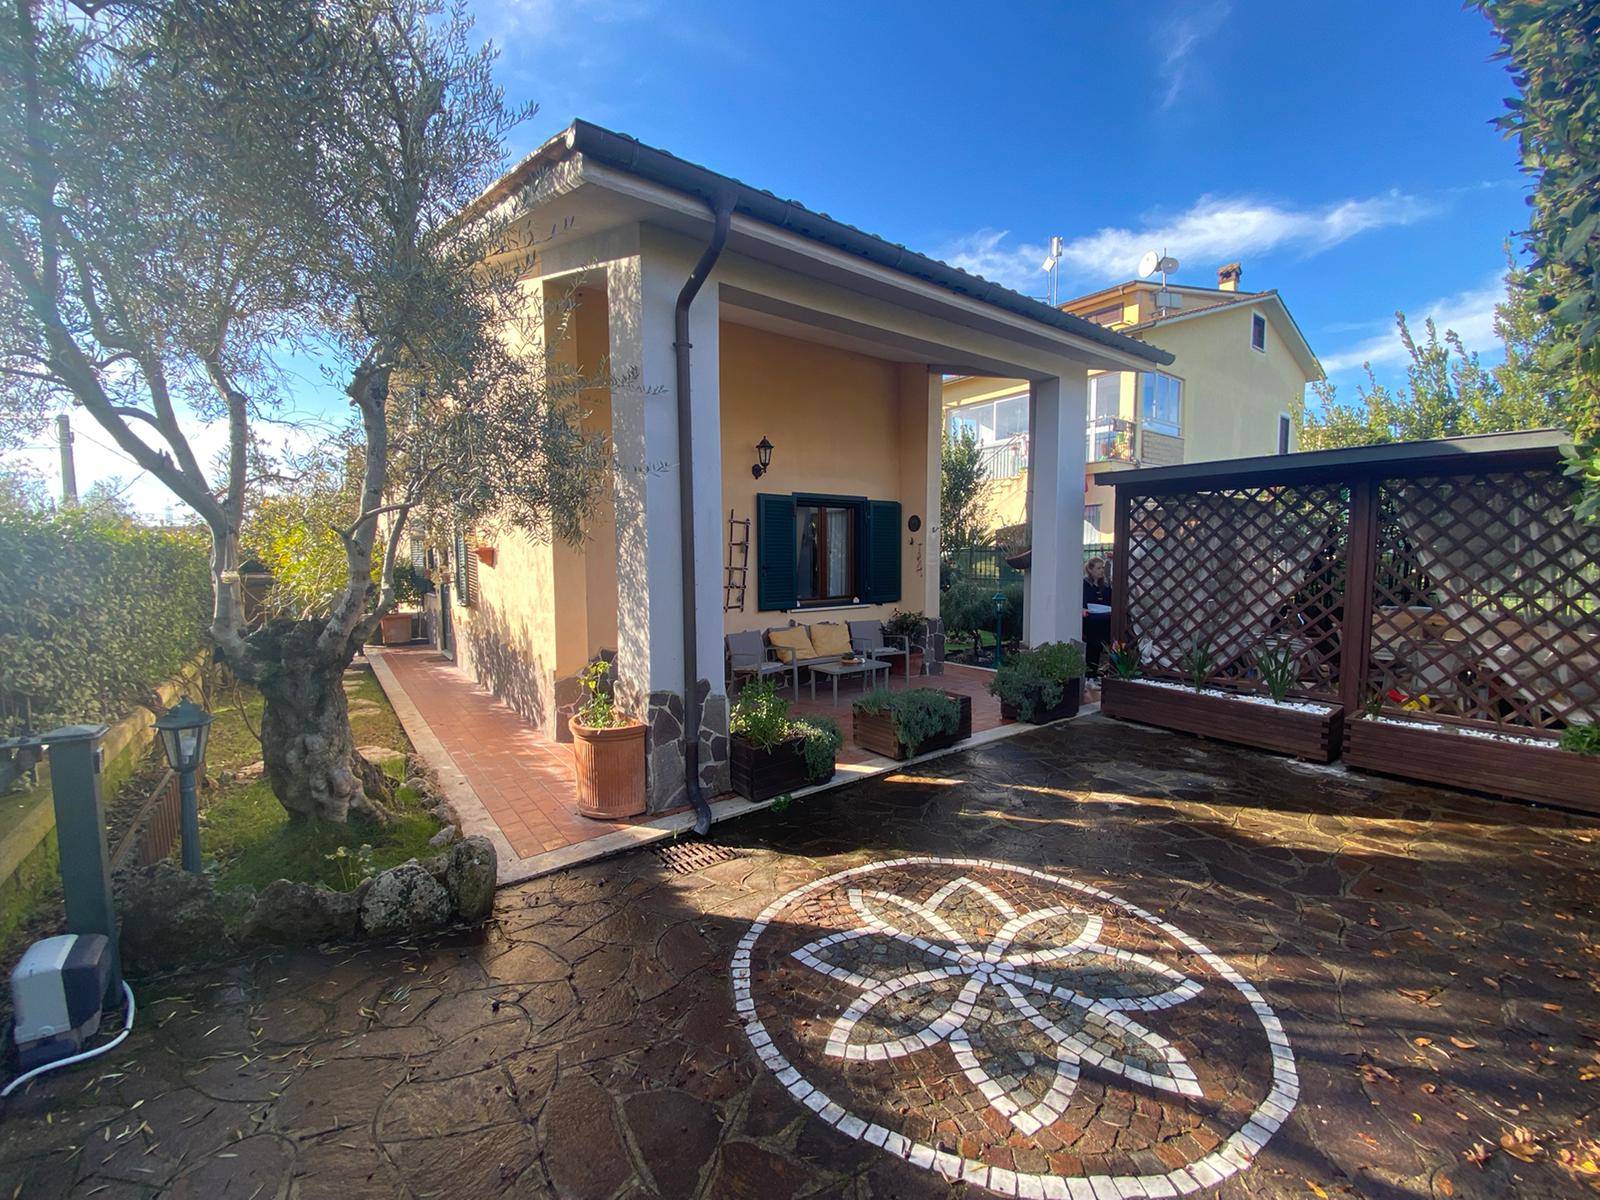 Villa Bifamiliare in vendita a Capena, 3 locali, zona Località: BIVIO DI CAPANNELLE, prezzo € 199.000 | CambioCasa.it